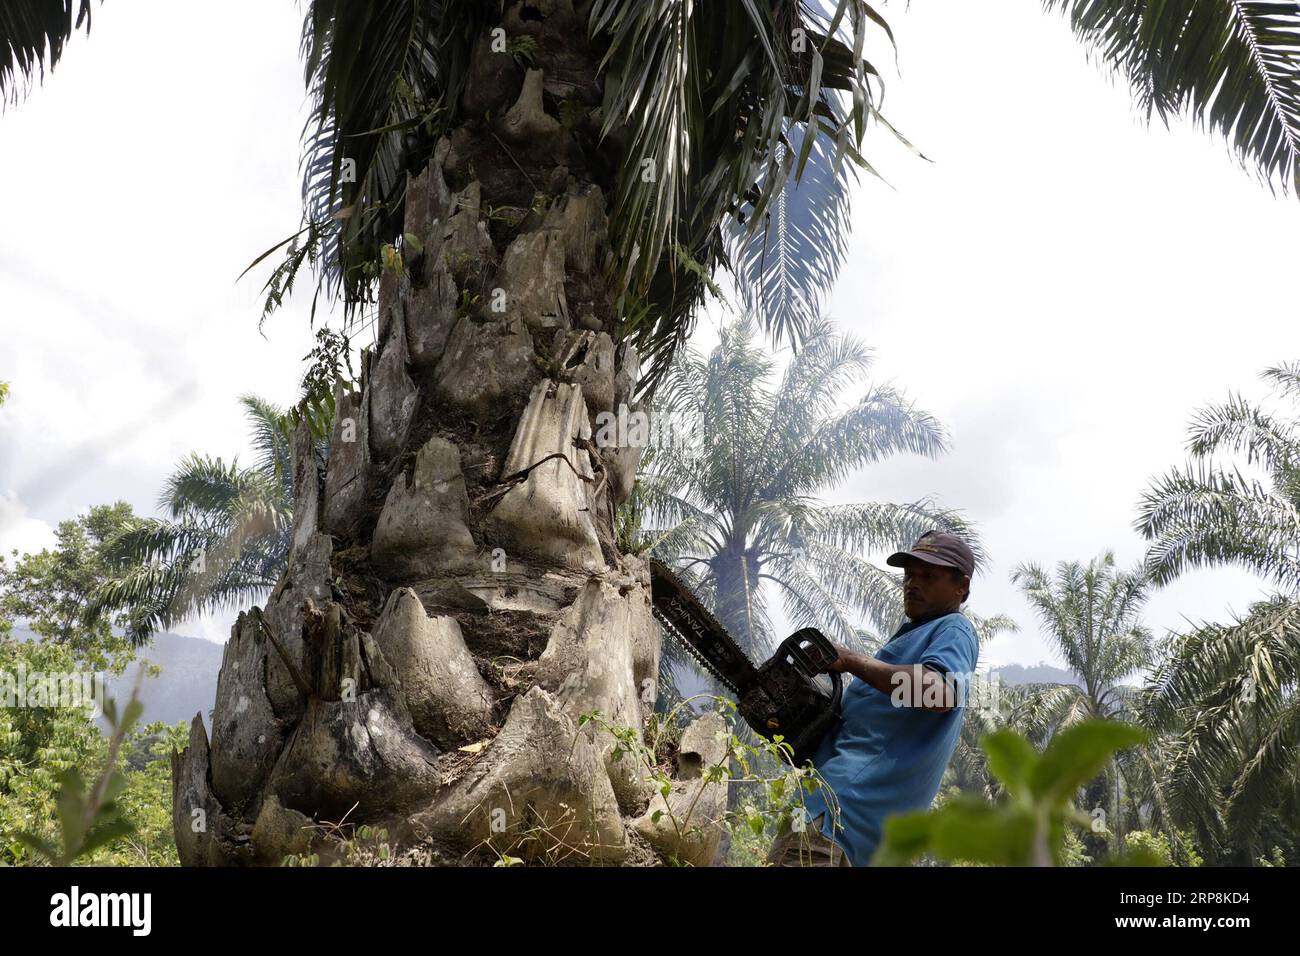 (190309) -- ACEH, 9. März 2019 -- Ein Arbeiter vom Aceh Umwelt- und Forstministerium schneidet illegal gepflanzte Ölpalmen im Leuser-Erhaltungswald in der Provinz Aceh, Indonesien, 9. März 2019. In den letzten Jahren haben die Mitglieder des Aceh Umwelt- und Forstministeriums illegale Palmölbäume im Leuser-Ökosystem abgeholzt, in dem bedrohte Tiere wie Orang-Utans, Sumatra-Tiger und Elefanten leben. ) INDONESIEN-ACEH-ILLEGALER PALMÖLSCHNITT JUNAIDI PUBLICATIONXNOTXINXCHN Stockfoto